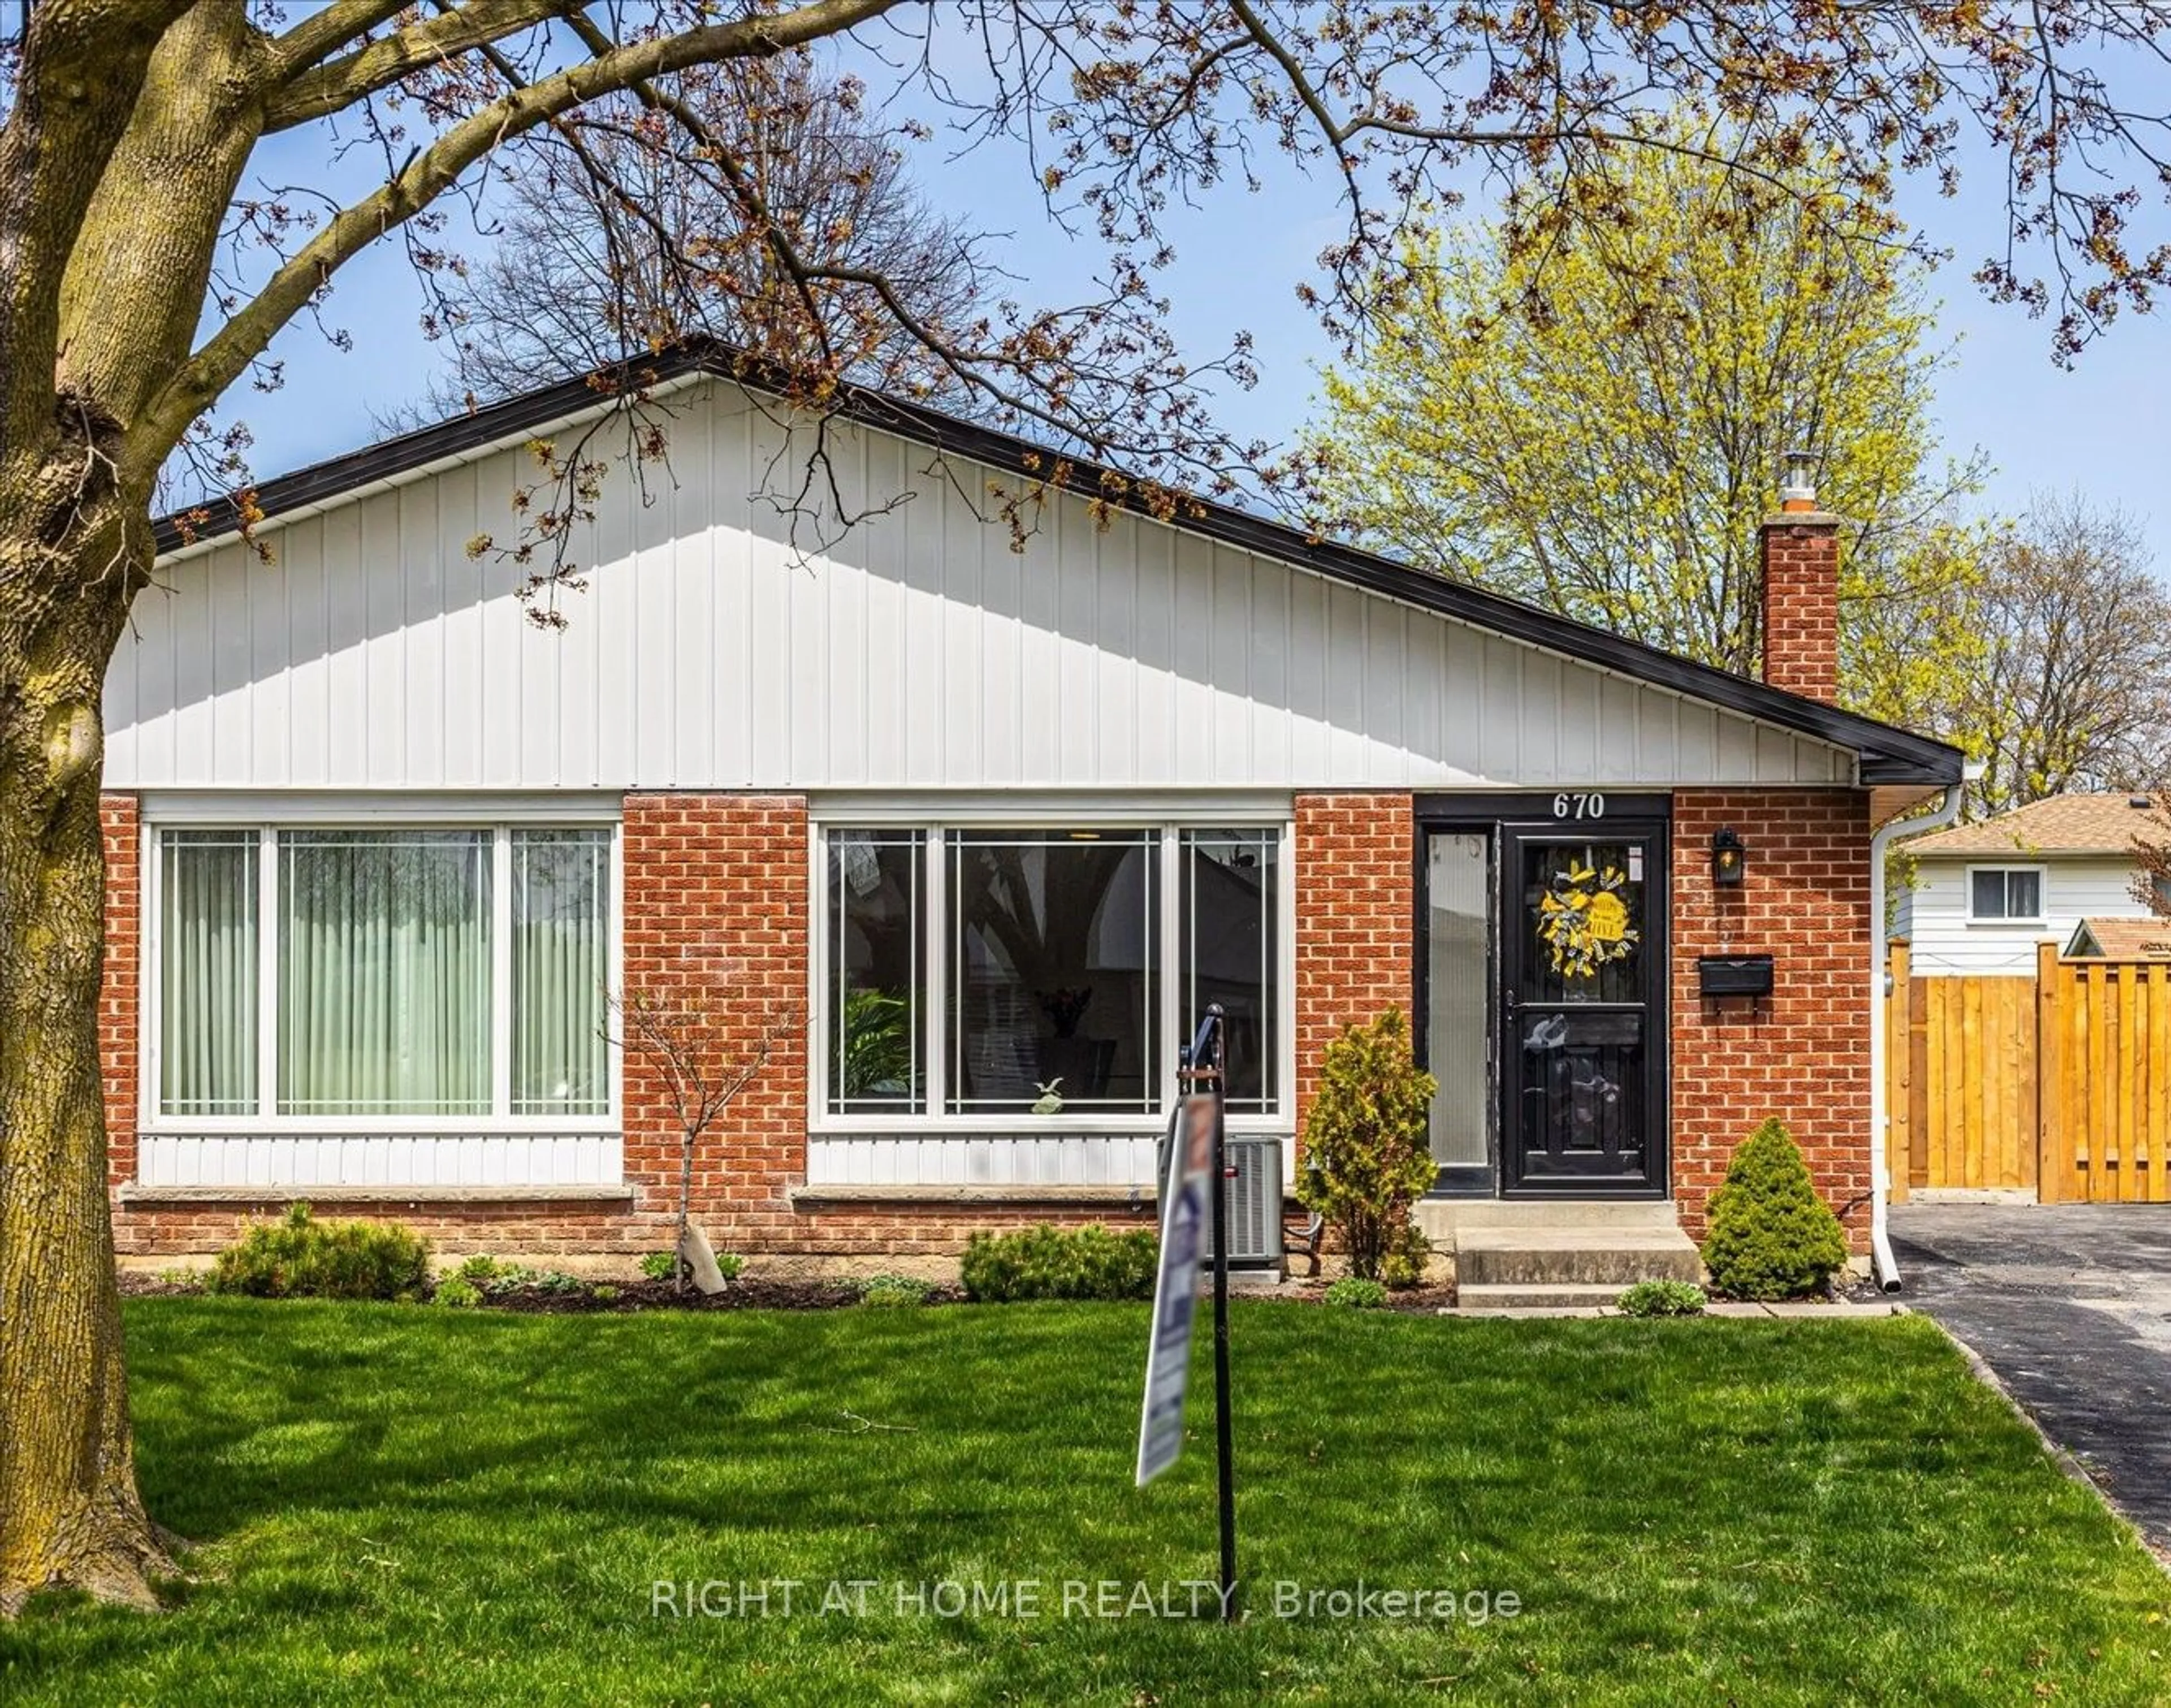 Home with brick exterior material for 670 Berwick Cres, Oshawa Ontario L1J 3E7